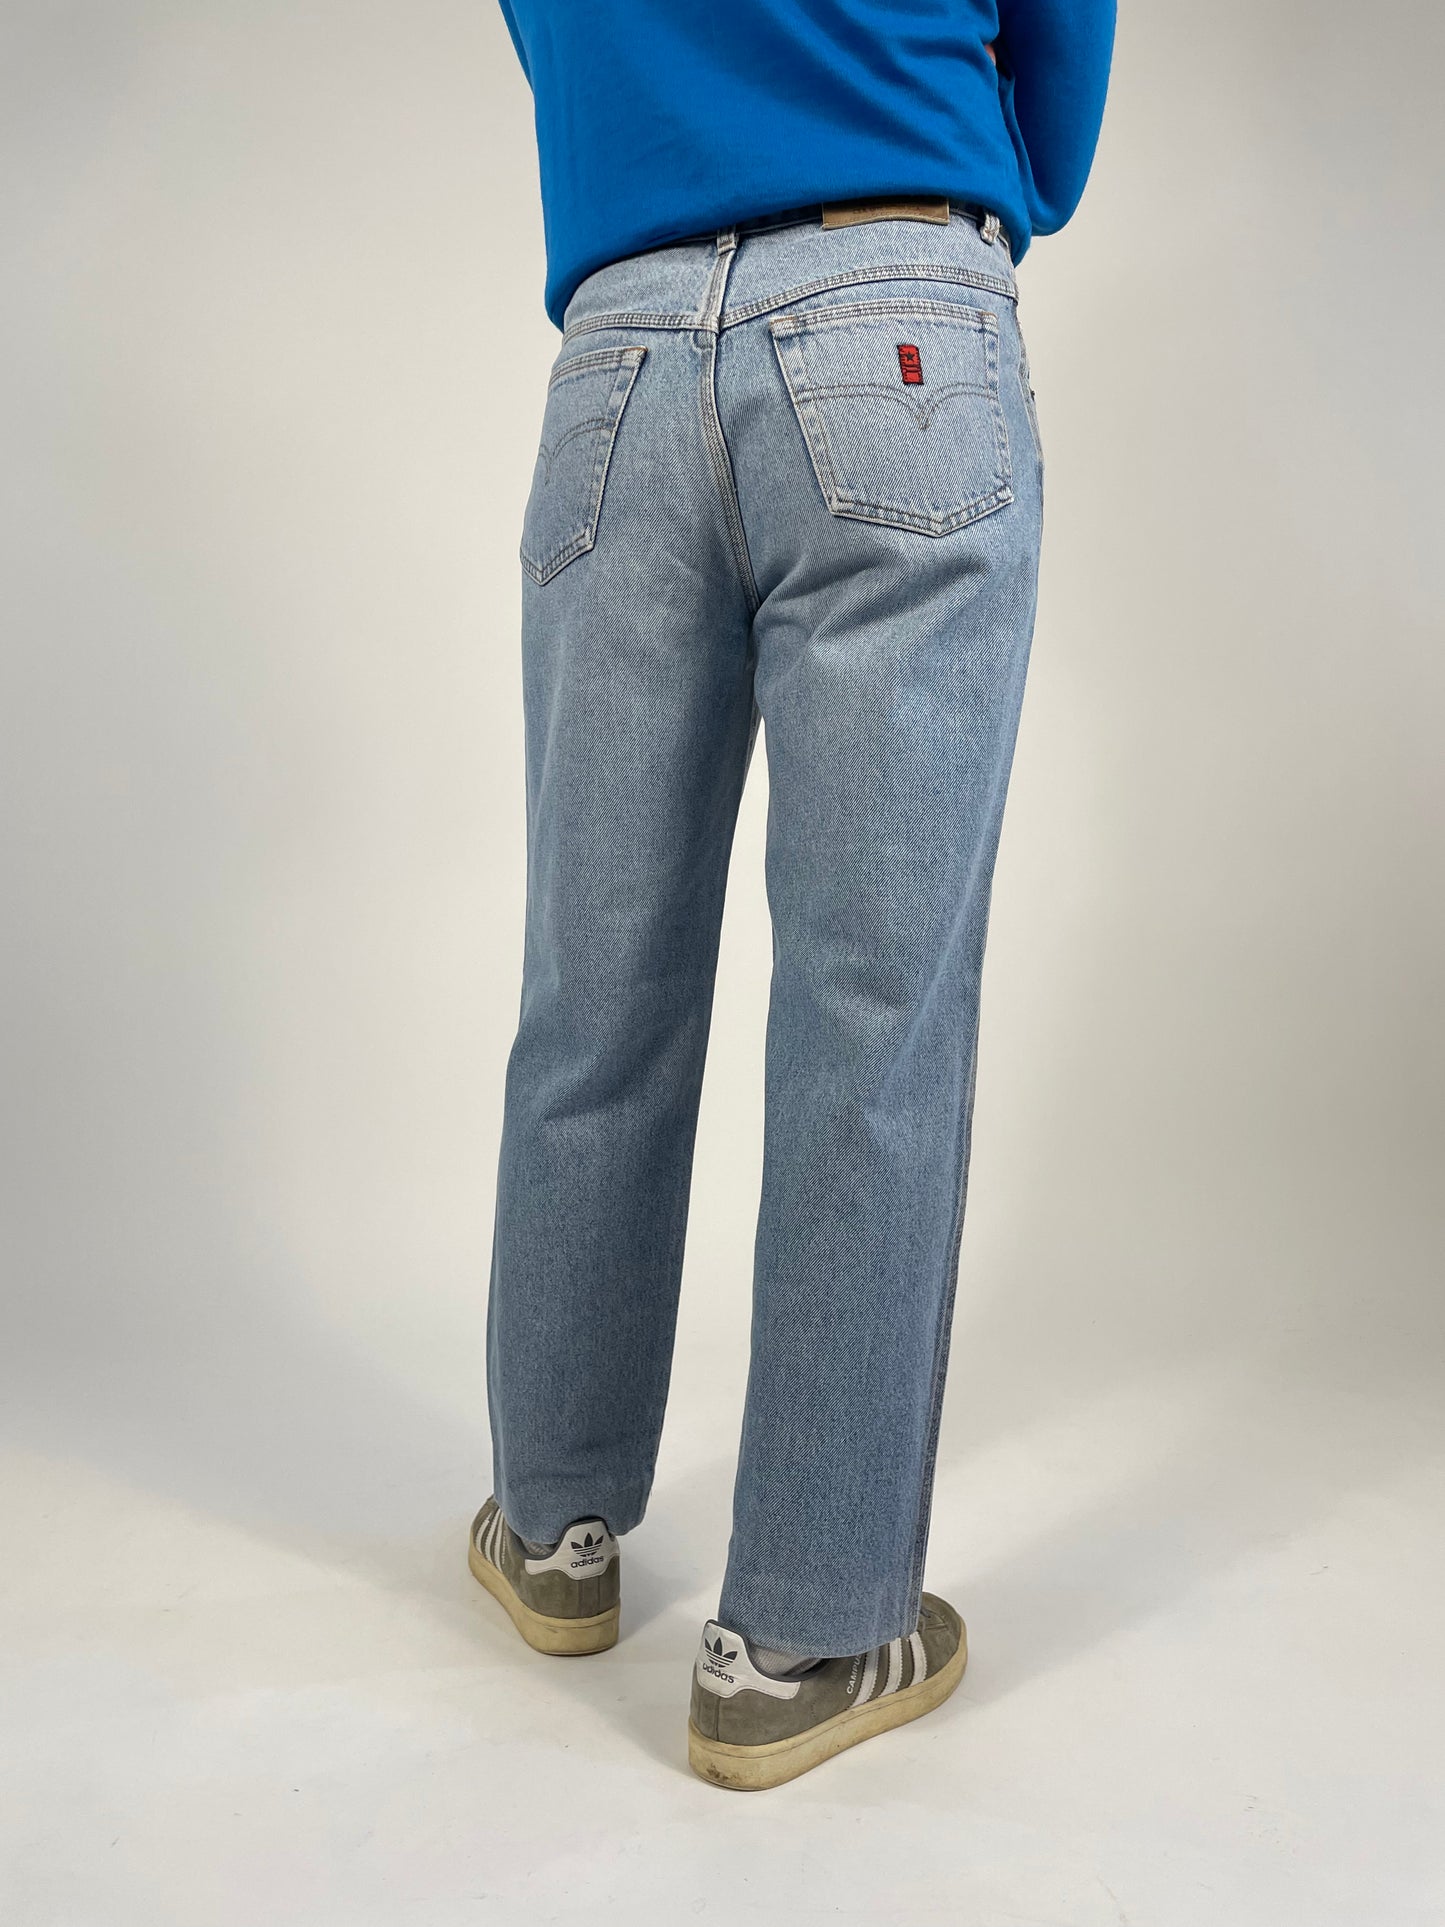 jeans-anni-80-uomo-denim-chiaro